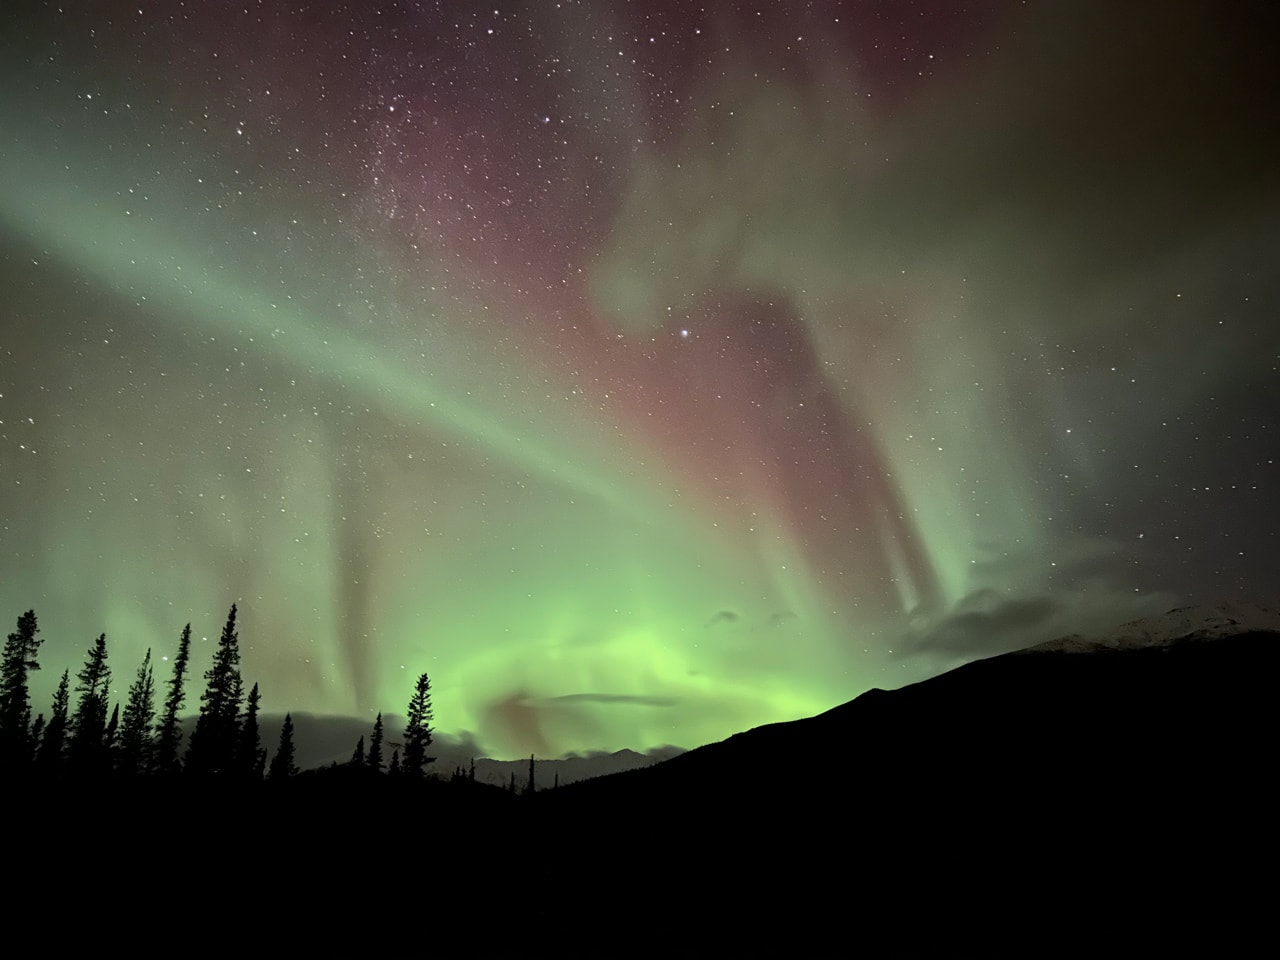 La aurora boreal ilumina el cielo de Alaska y aparece como cintas moradas con luz verde neón.  Las estrellas brillan a través de las cintas violetas como puntos de luz blancos.  El paisaje de Alaska está completamente sombreado en el tercio inferior de la imagen.  La tierra es visible sólo como los contornos de árboles y montañas.